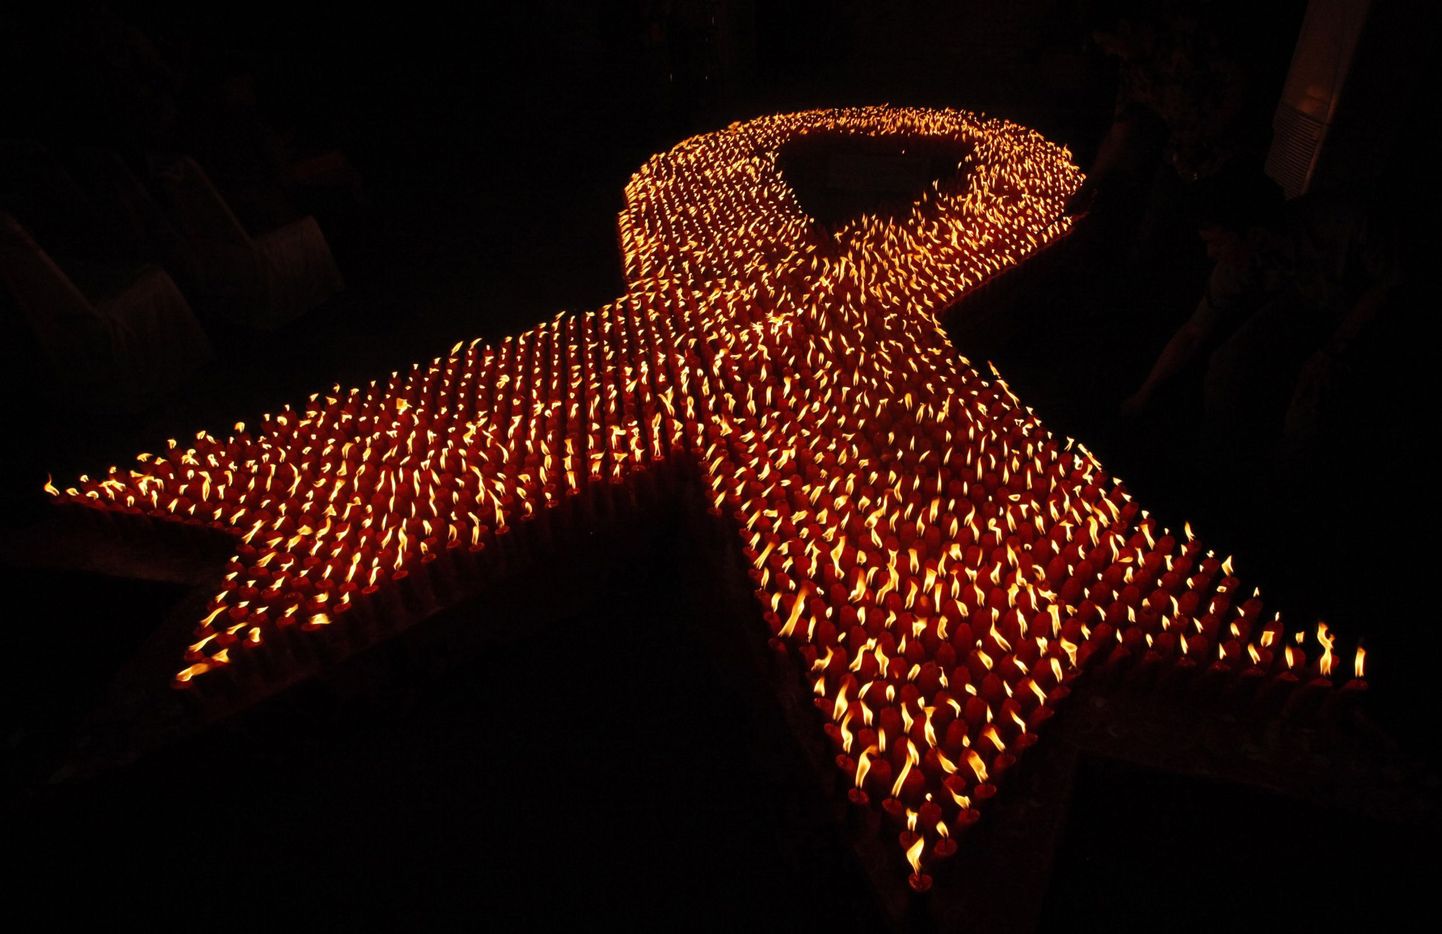 Ülemaailmsel aidsi vastu võitlemise päeval kantakse punast solidaarsuslinti (Red Ribbon), mis sümboliseerib ühtsust võitluses HIVi ja aidsiga. Pildil küünlad kujutamas punast linti